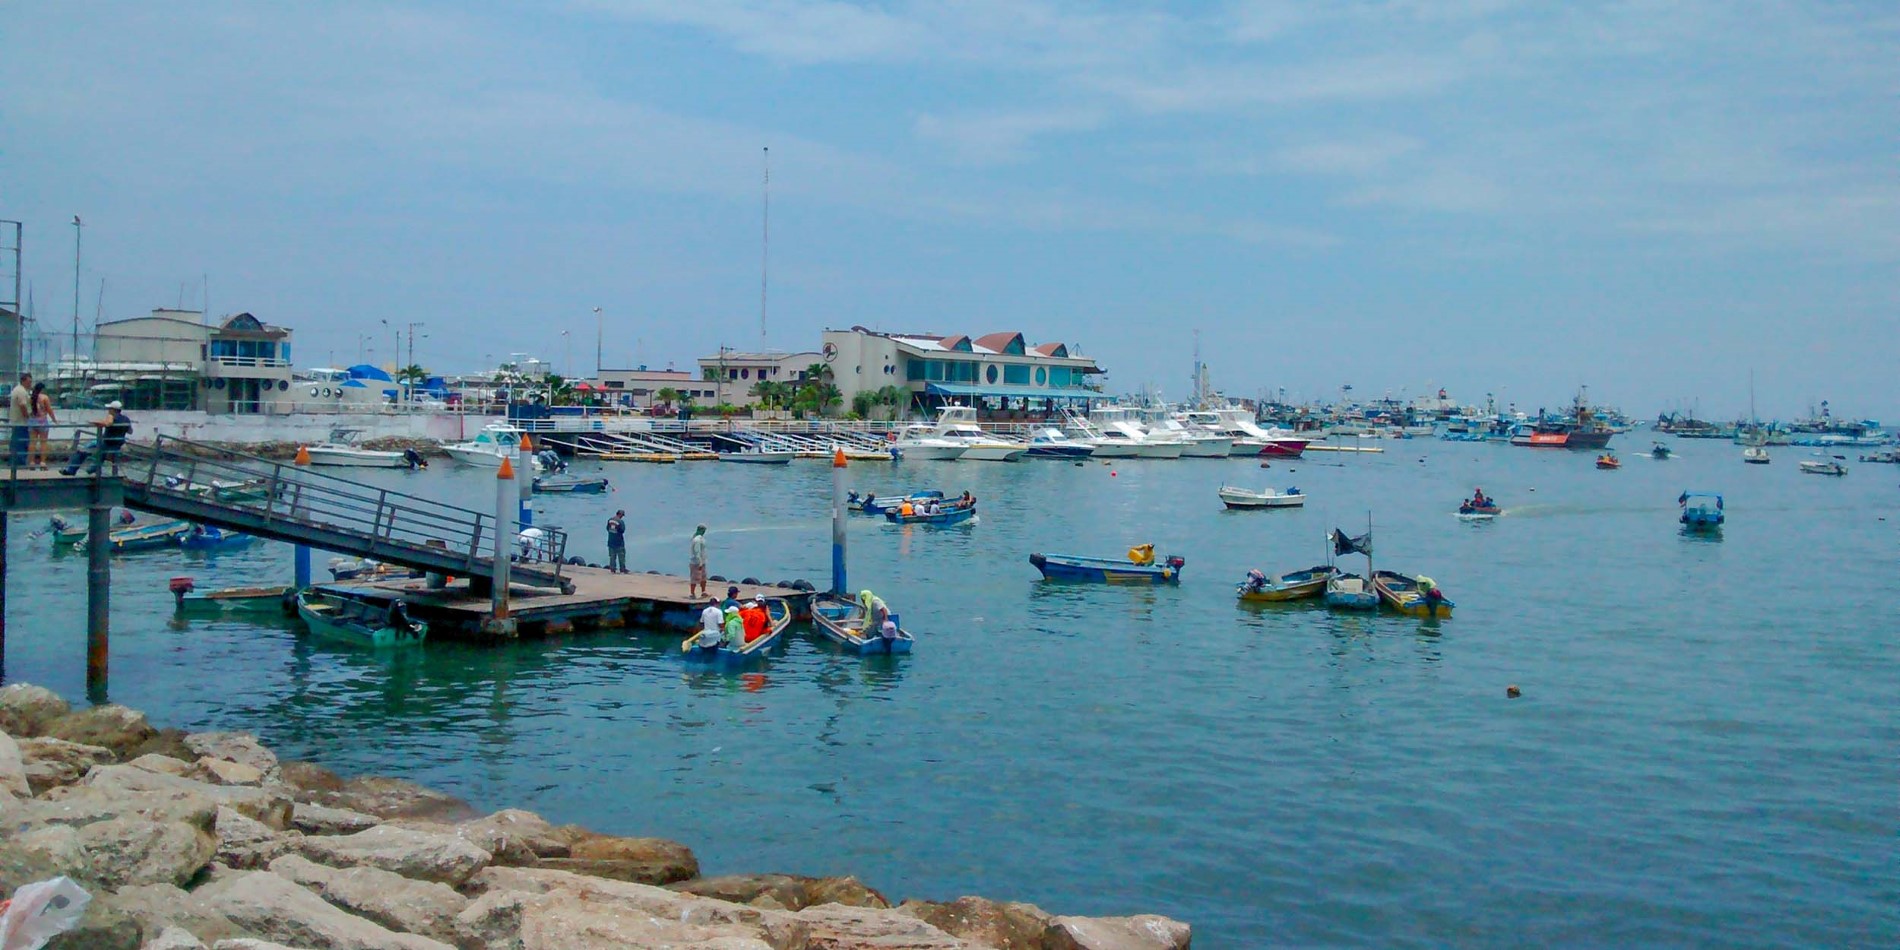 Le joli port de pêche de Manta.